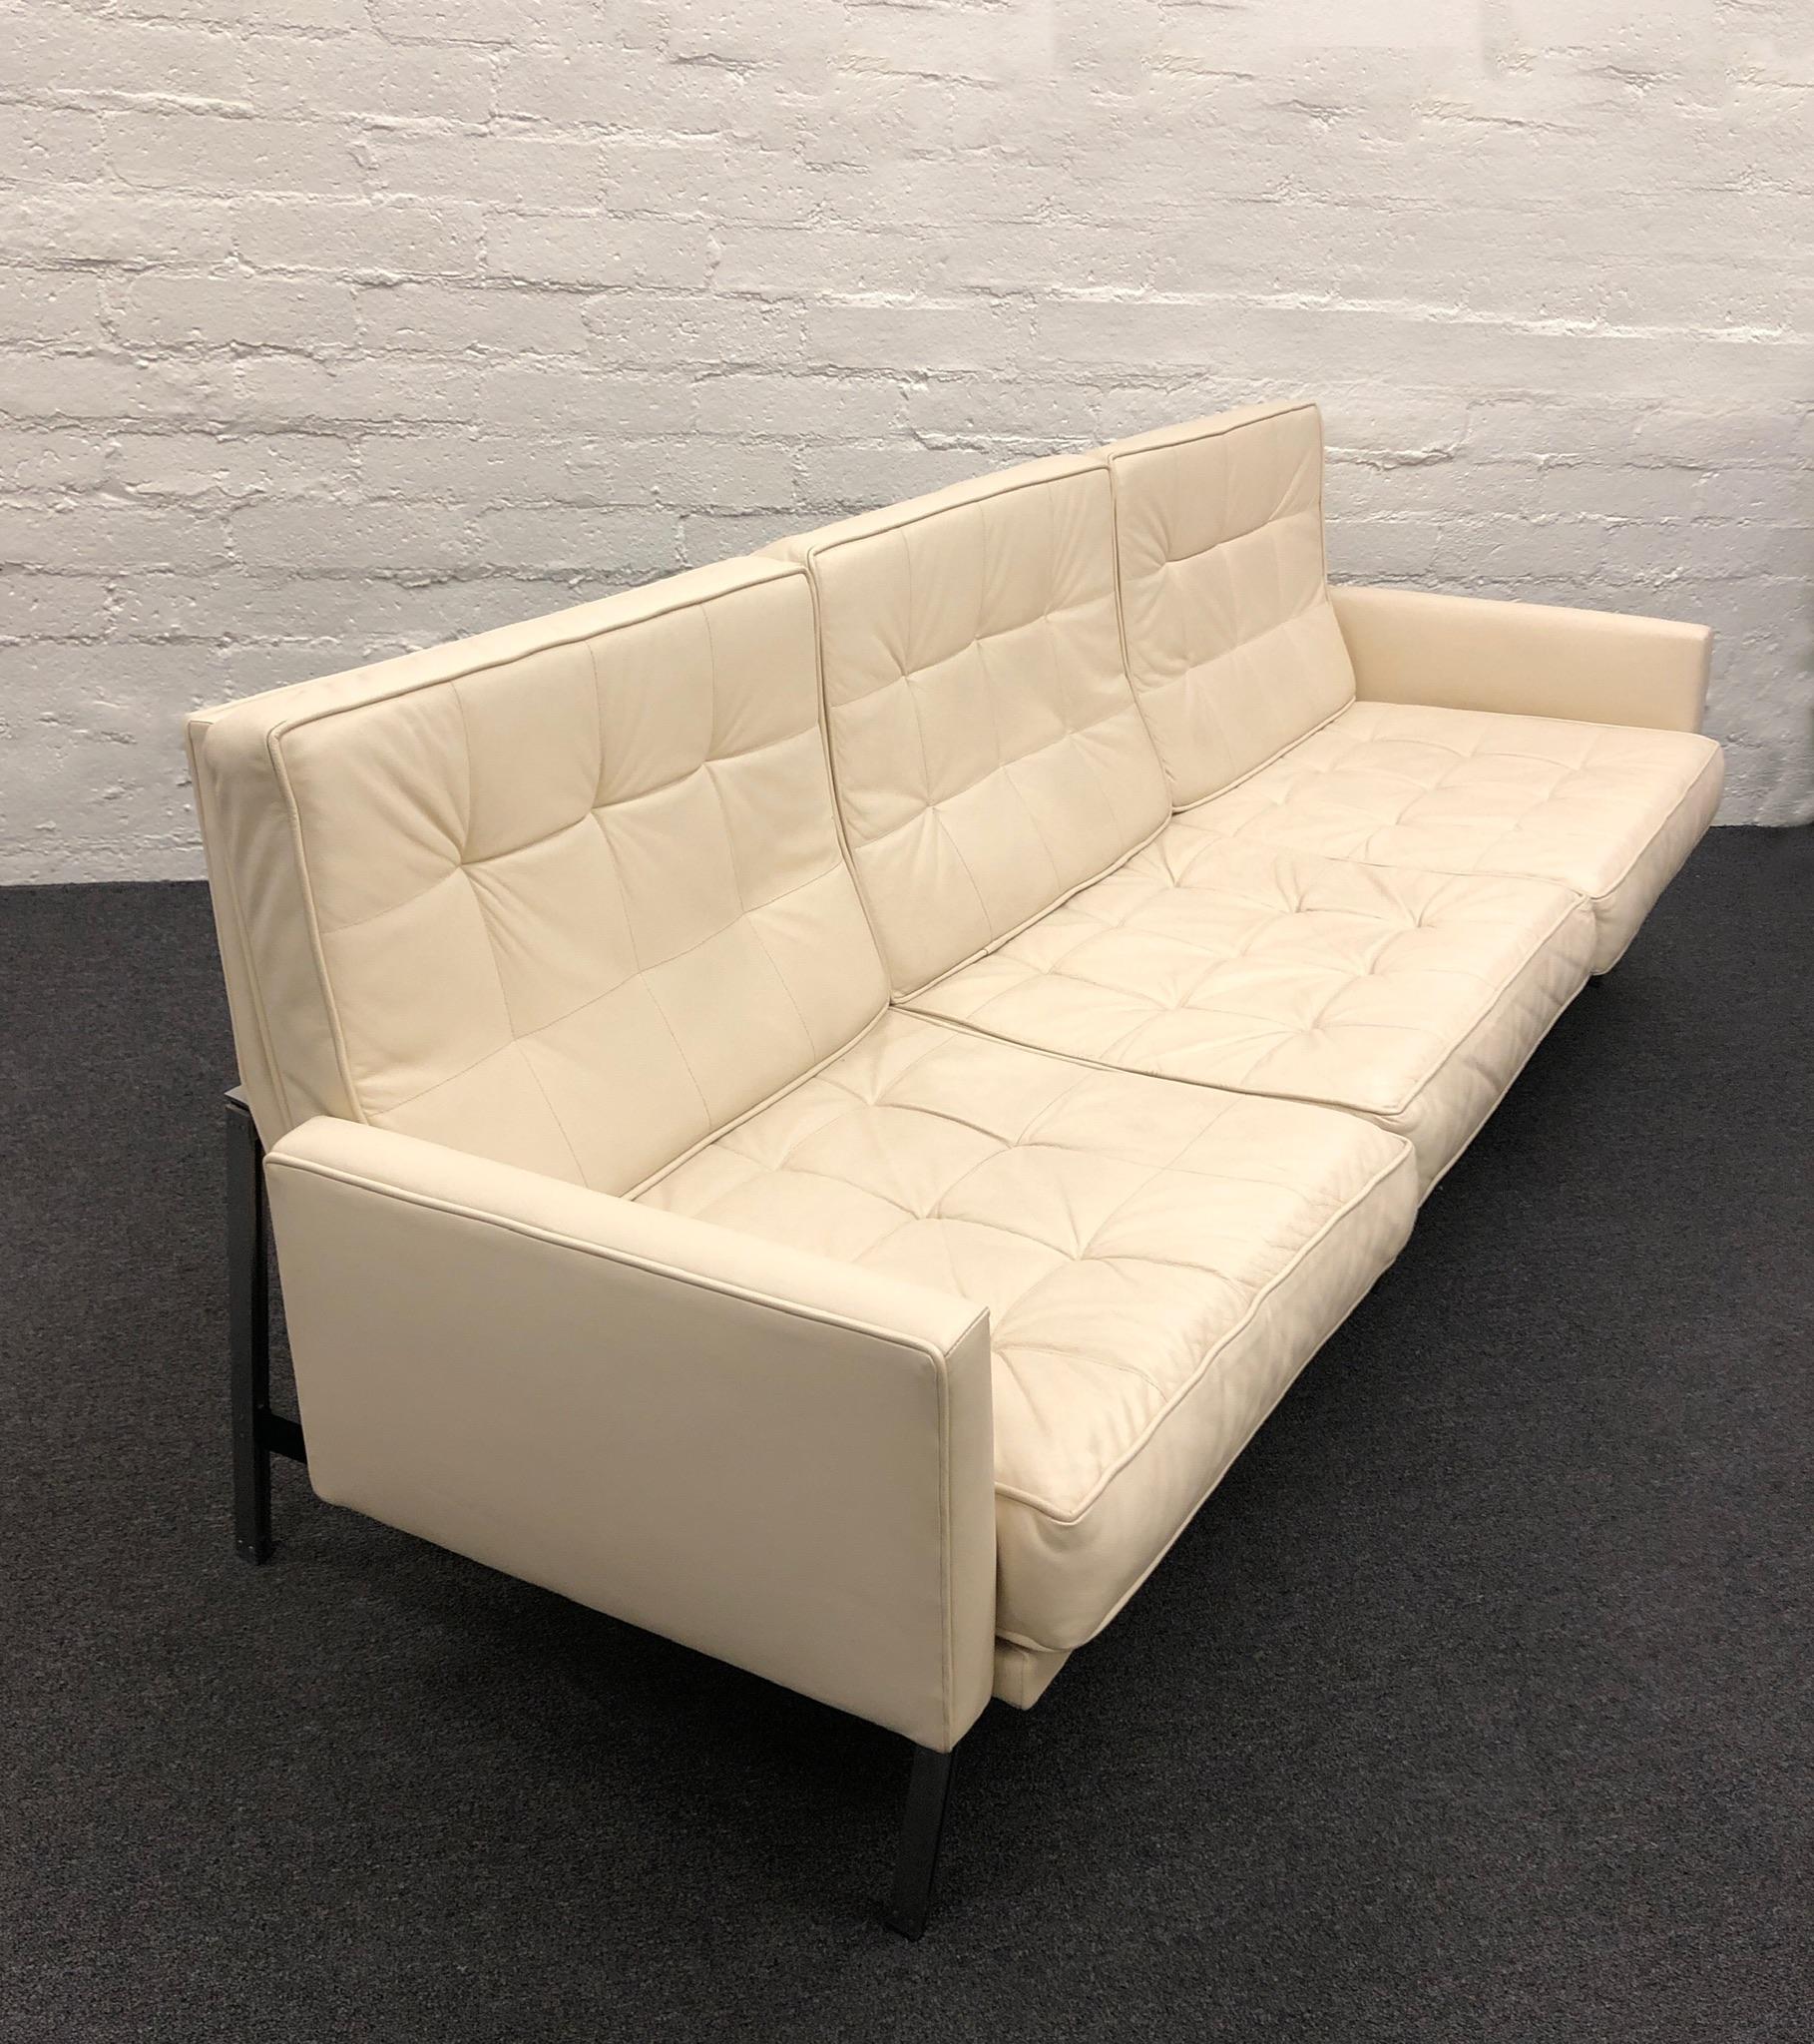 Paralleles Bar-Sofa aus weißem Leder und gebürstetem Edelstahl, entworfen von Florence Knoll für Knoll.
Sie wurde von der australischen Botschaft herausgegeben und behält ihr Etikett. 
Dies war  vor etwa 10 Jahren neu gepolstert. 
Wurde nur im